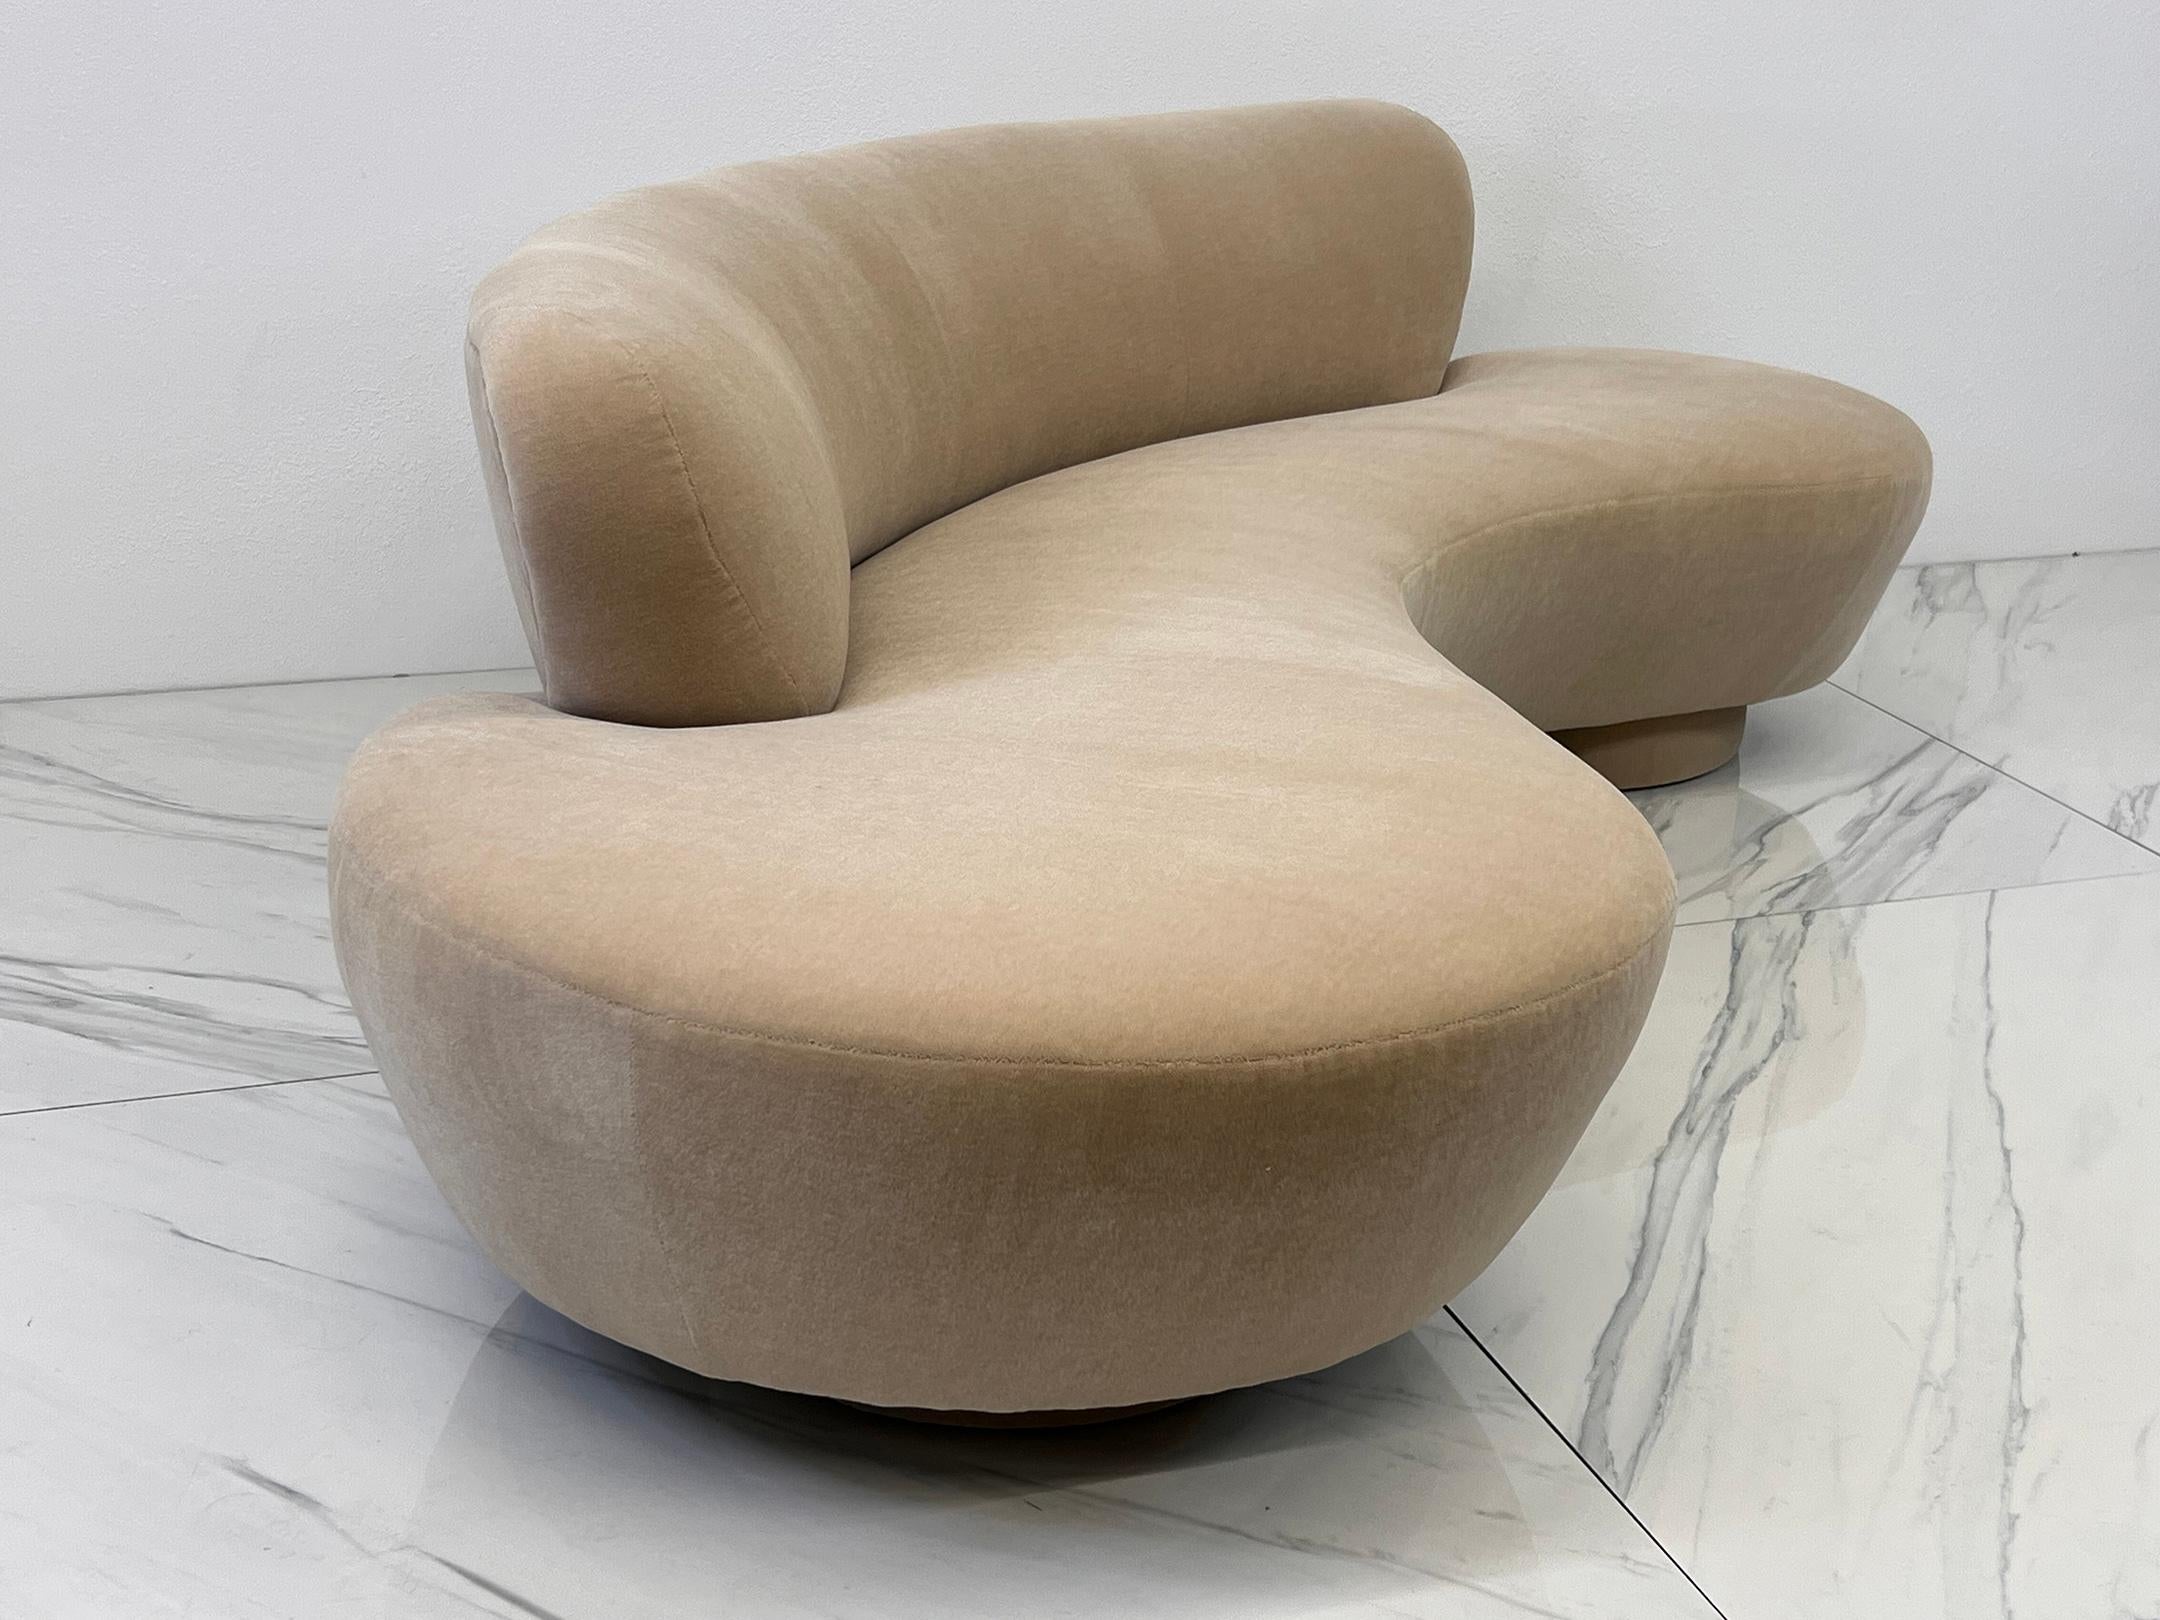 
Betreten Sie das Reich von Luxus und Design mit diesem kultigen Vladimir Kagan Cloud Sofa! Mit der Finesse eines Bildhauers gefertigt, ist dieses Meisterwerk nicht nur ein Möbelstück, sondern ein Erlebnis. Dank seiner biomorphen Freiform, die